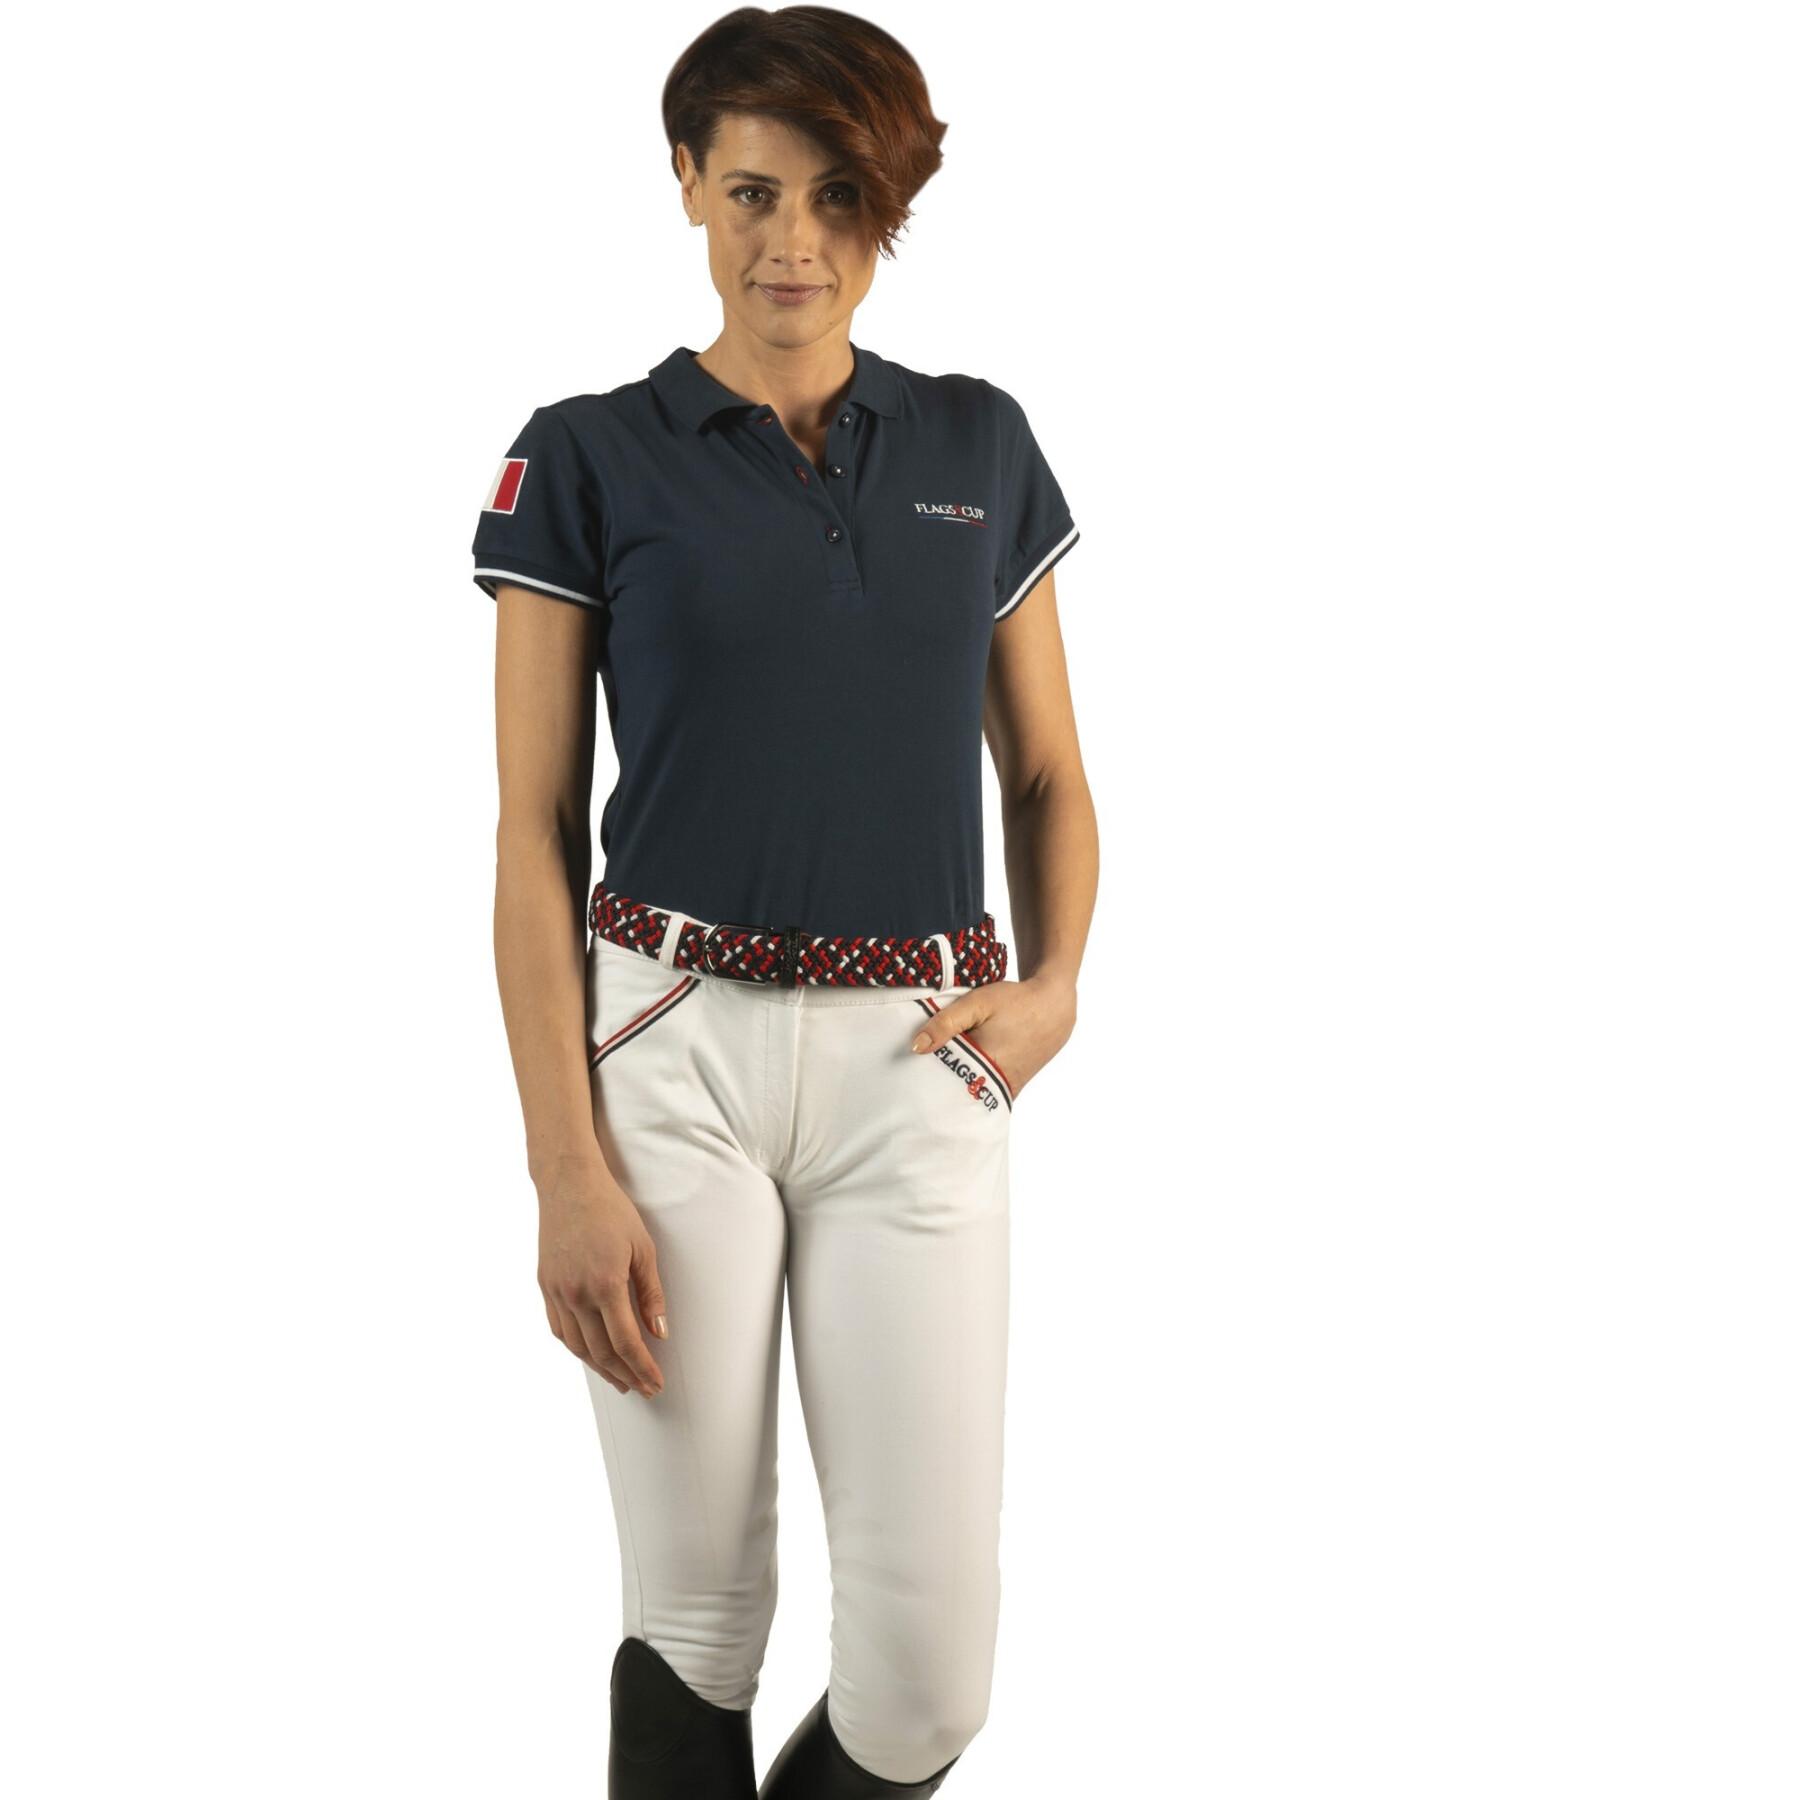 Pantalón de equitación de pinza media para mujer Flags&Cup Francia Collection